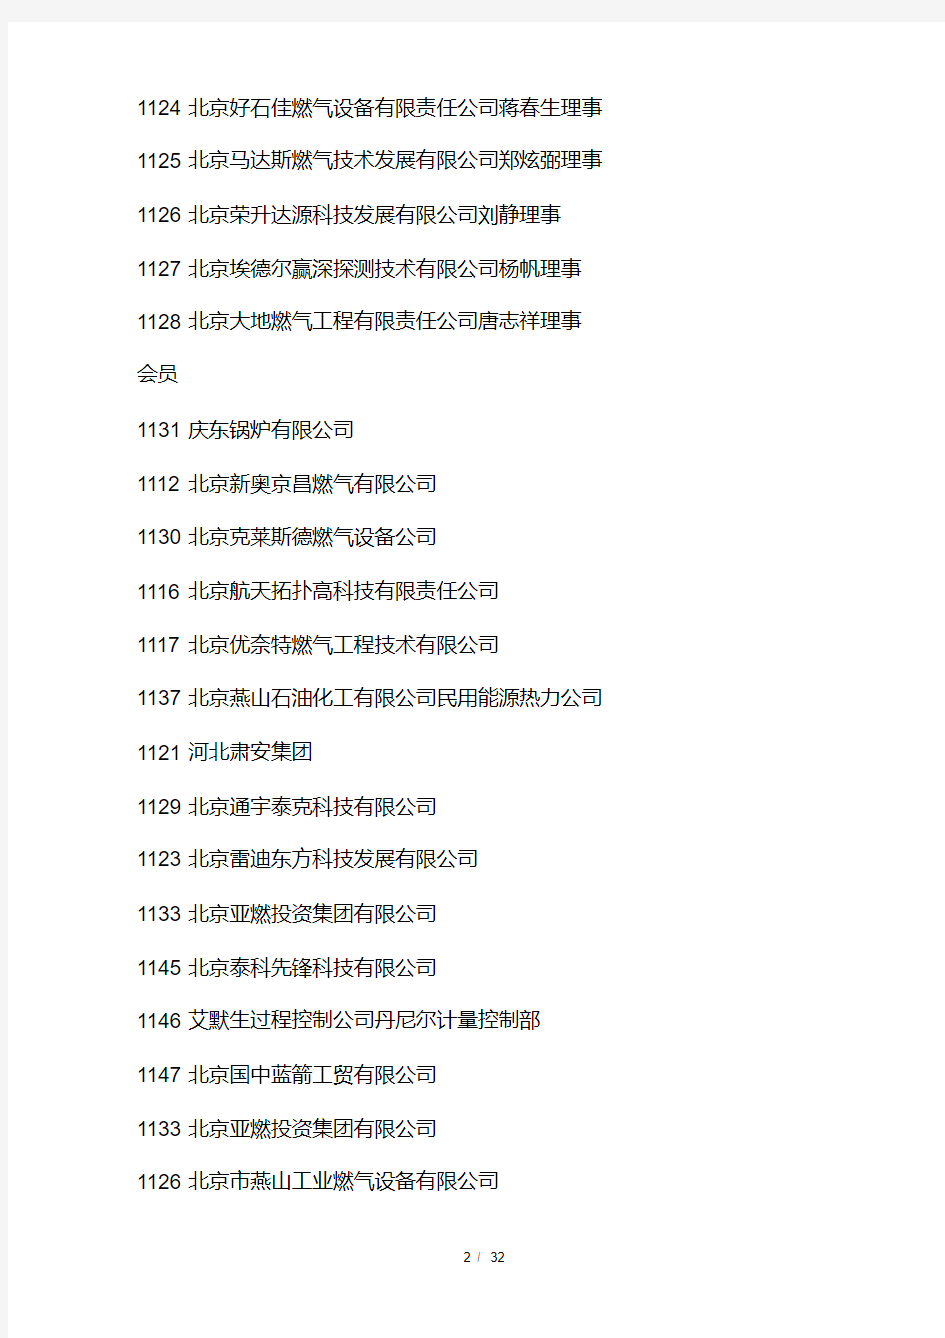 中国燃气名单.pdf